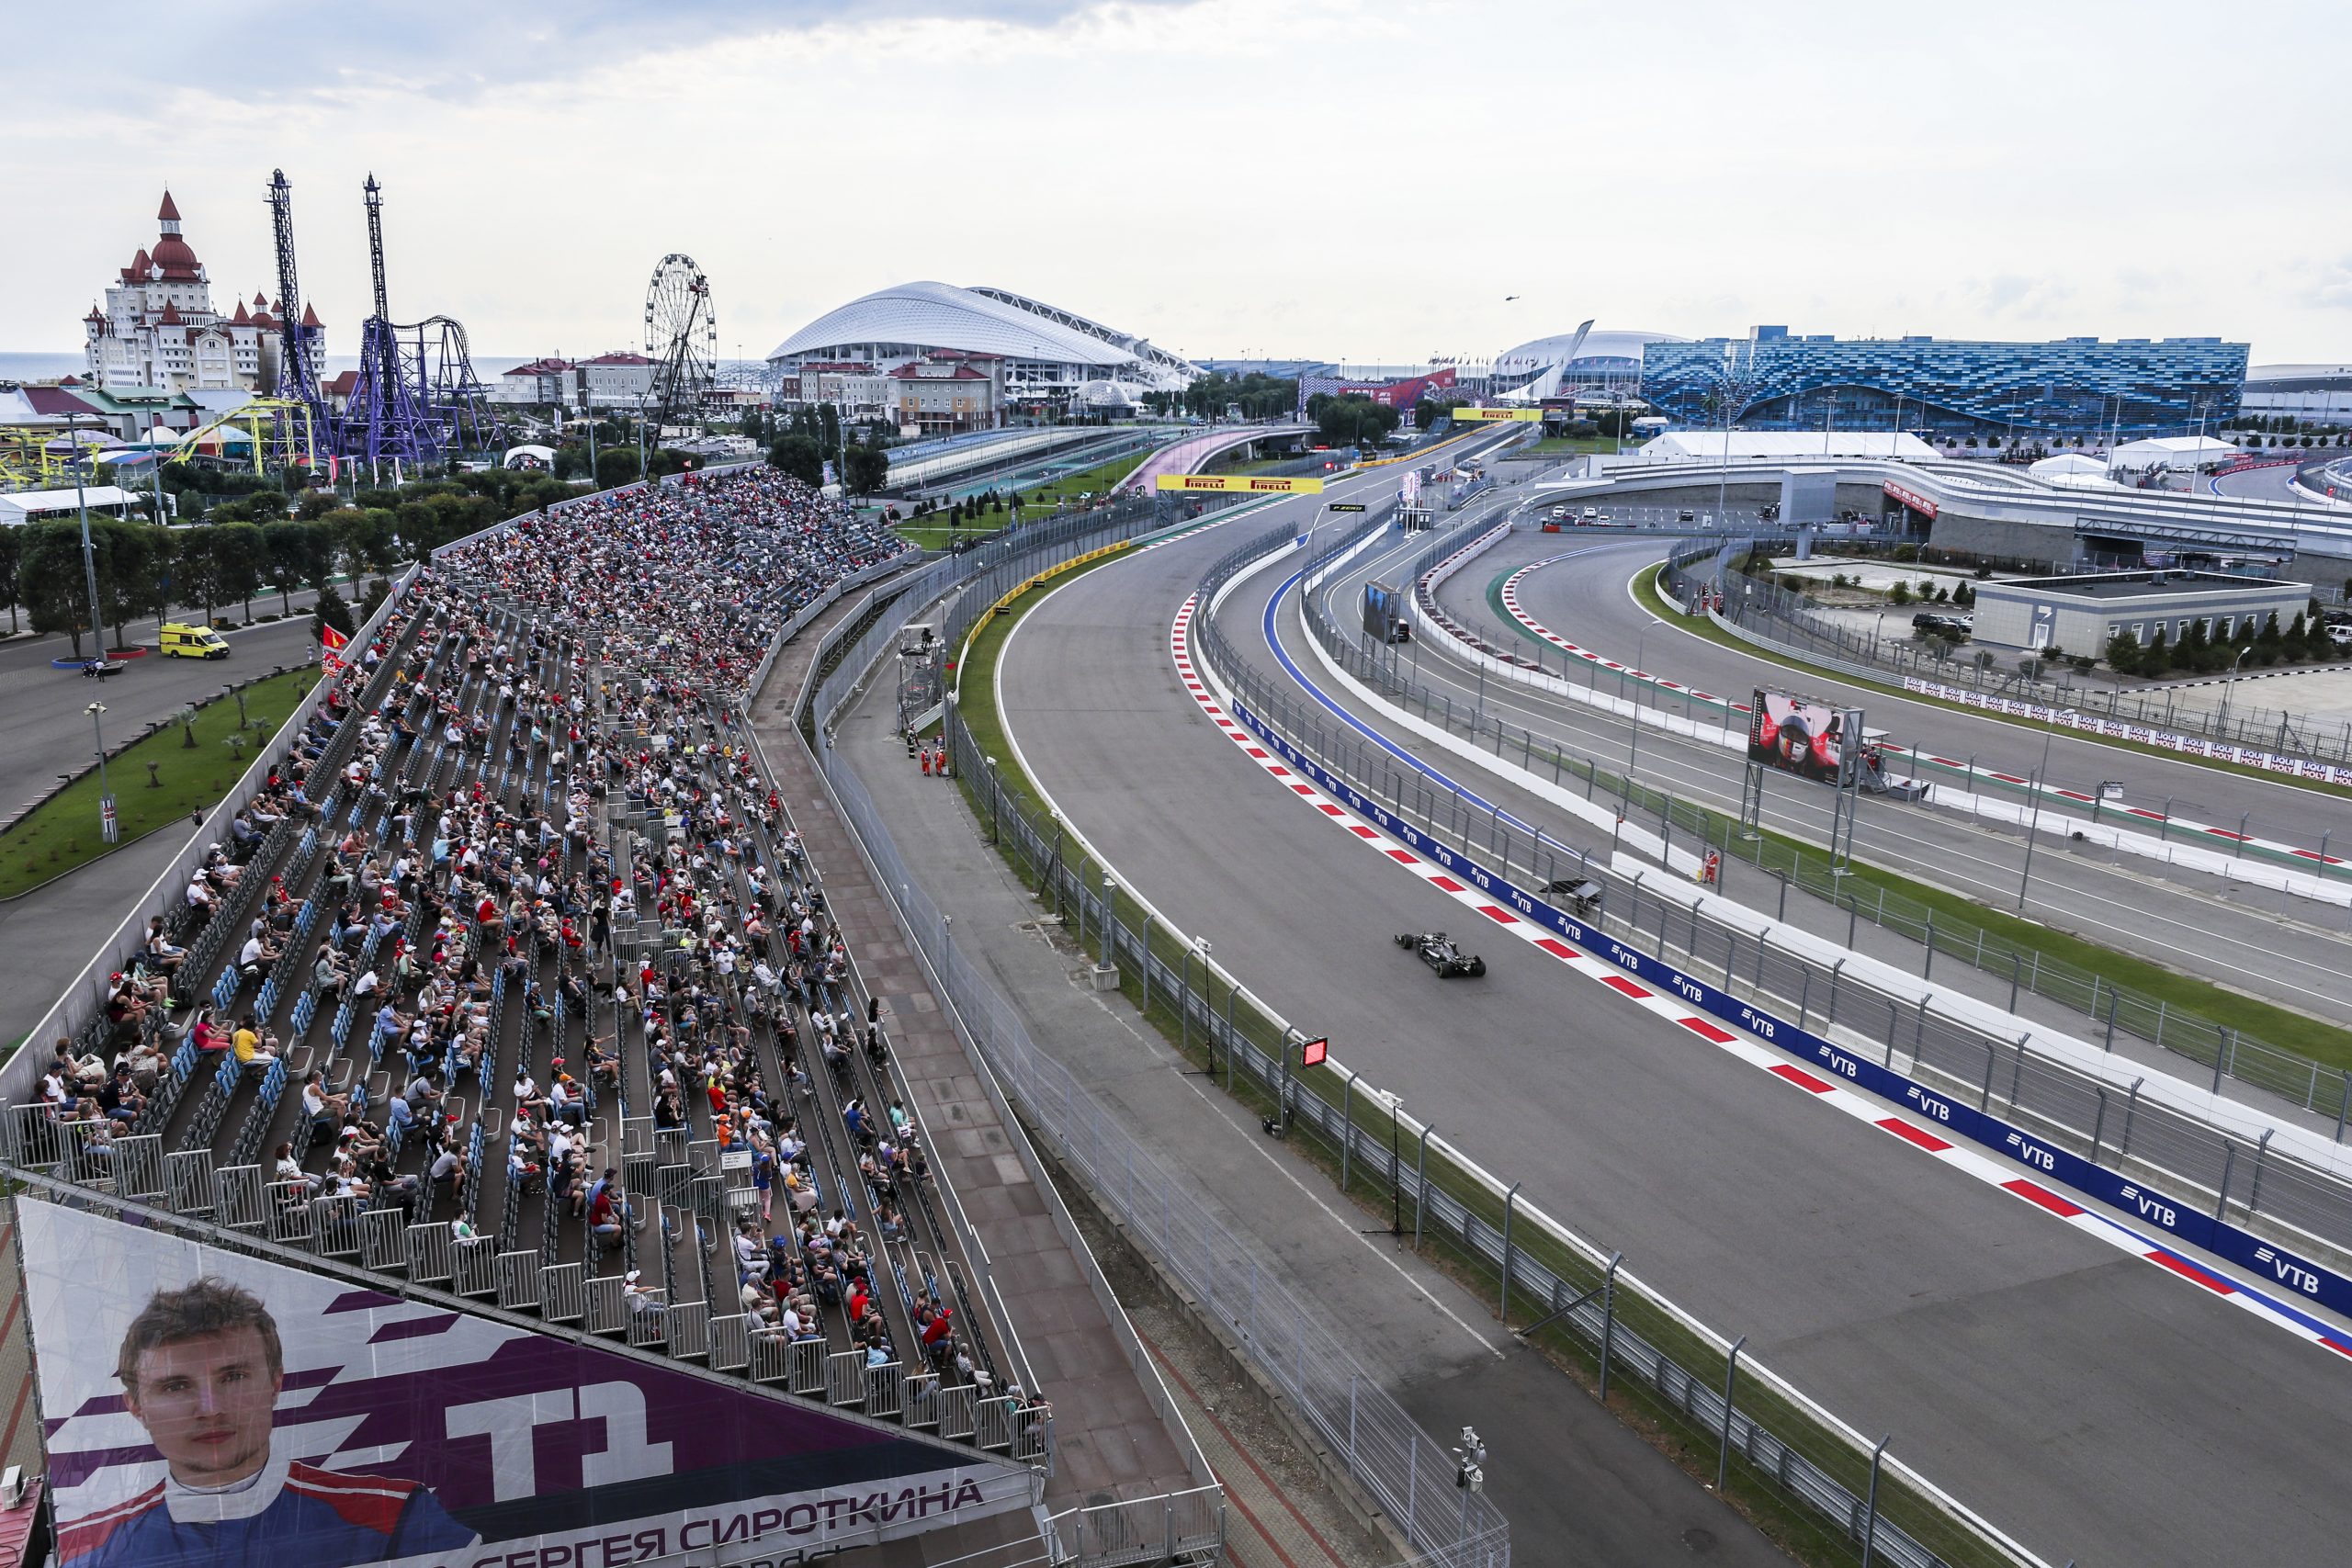 2020 Russian Grand Prix, Saturday (image courtesy Pirelli)